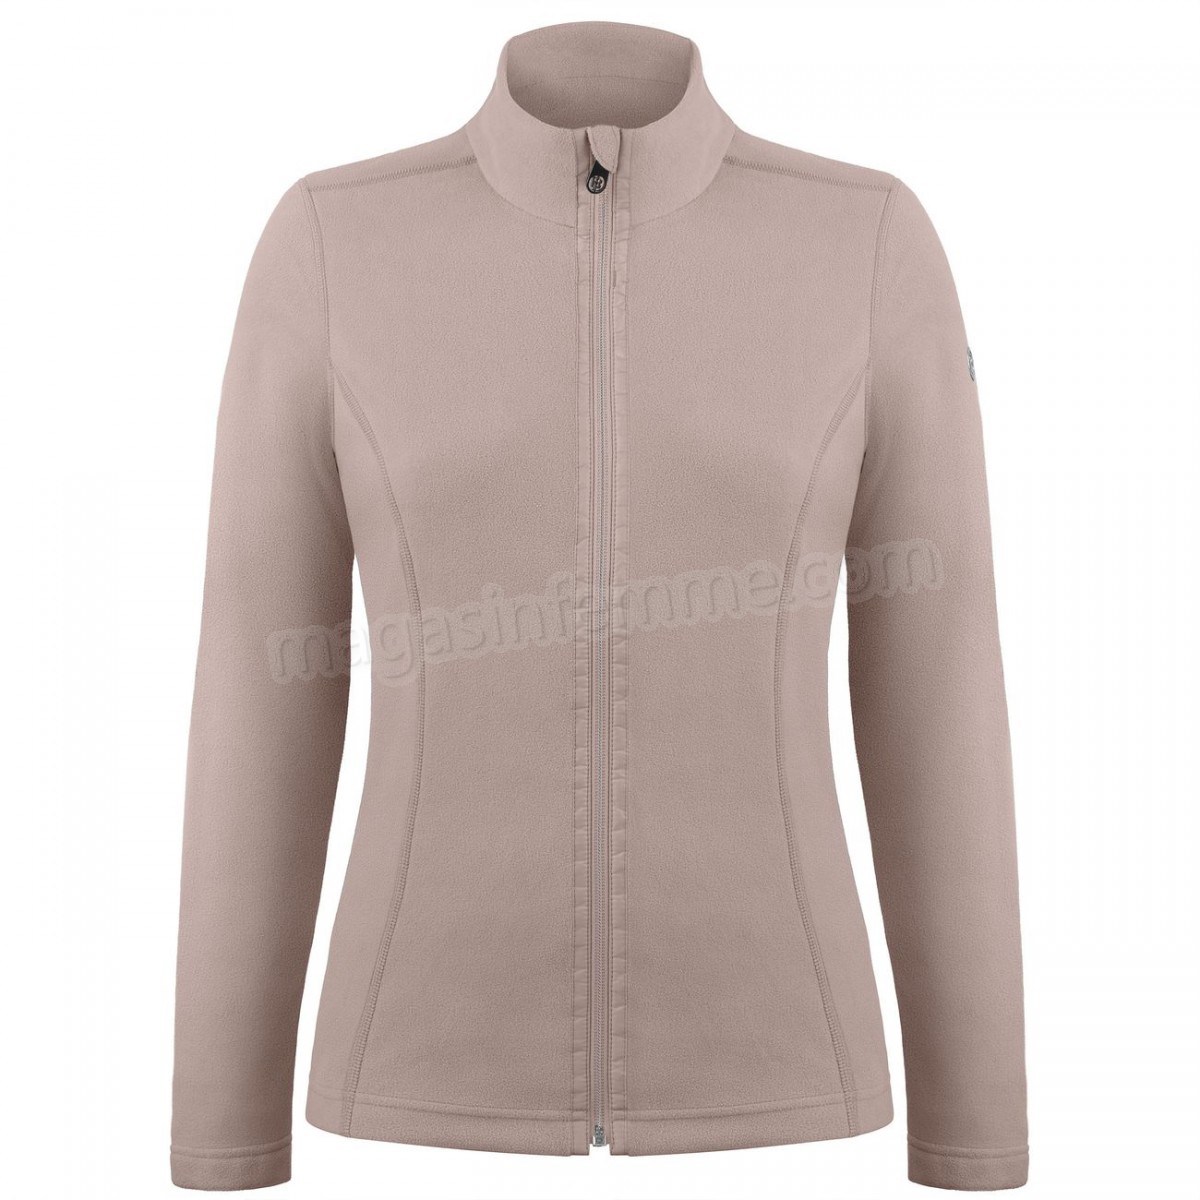 Poivre Blanc-Sports d'hiver femme POIVRE BLANC Veste Polaire Poivre Blanc Fleece Jacket 1500 Rock Brown Femme en solde - -0